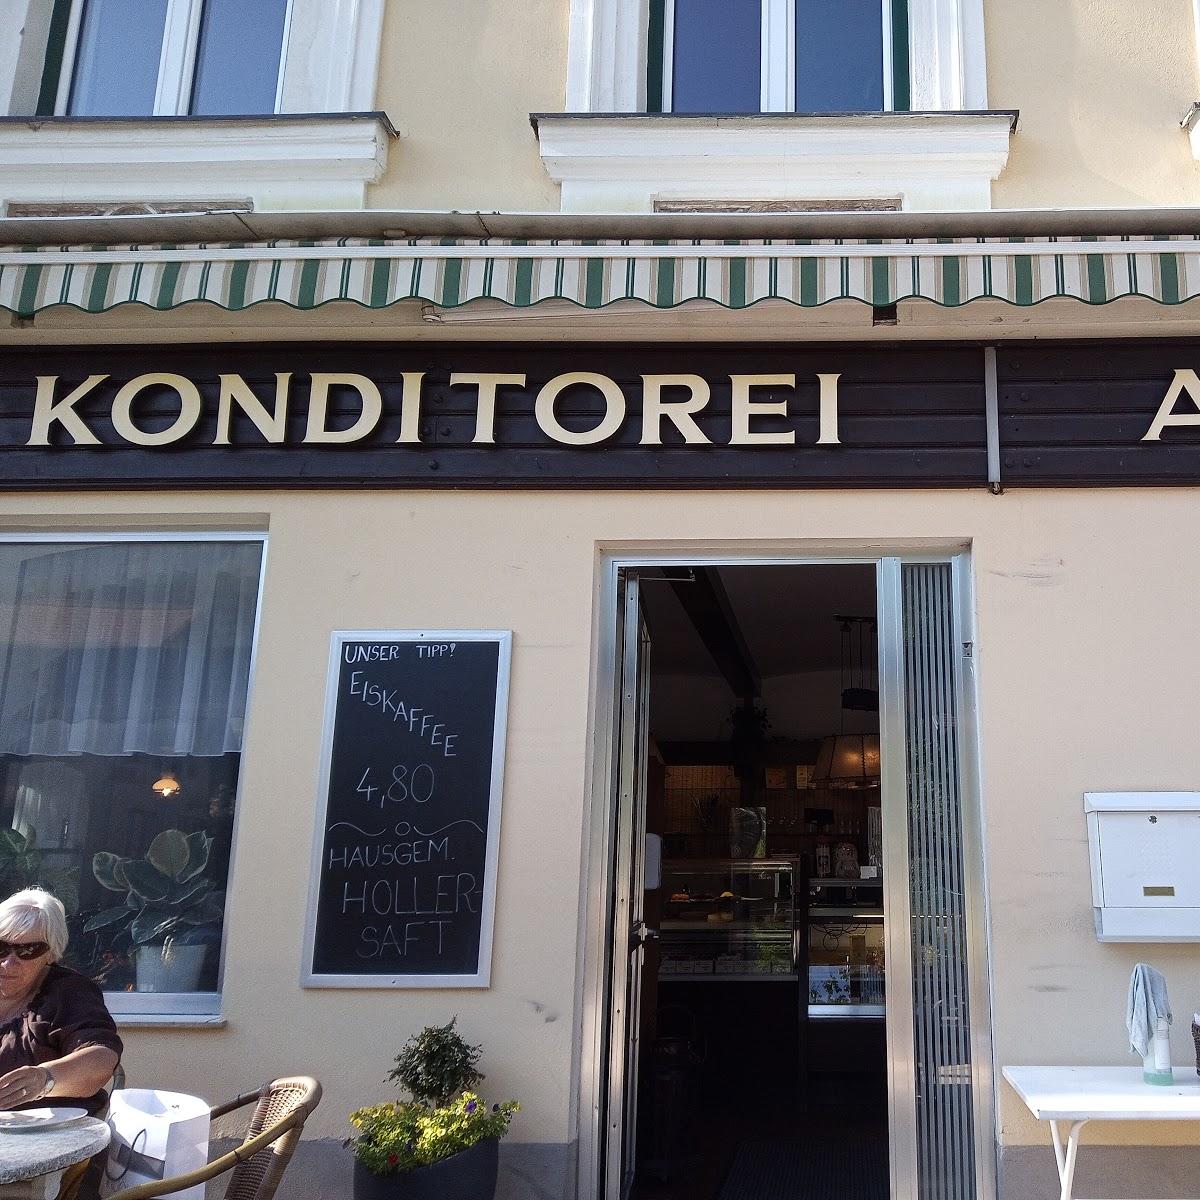 Restaurant "Cafe Konditorei Alber" in Payerbach